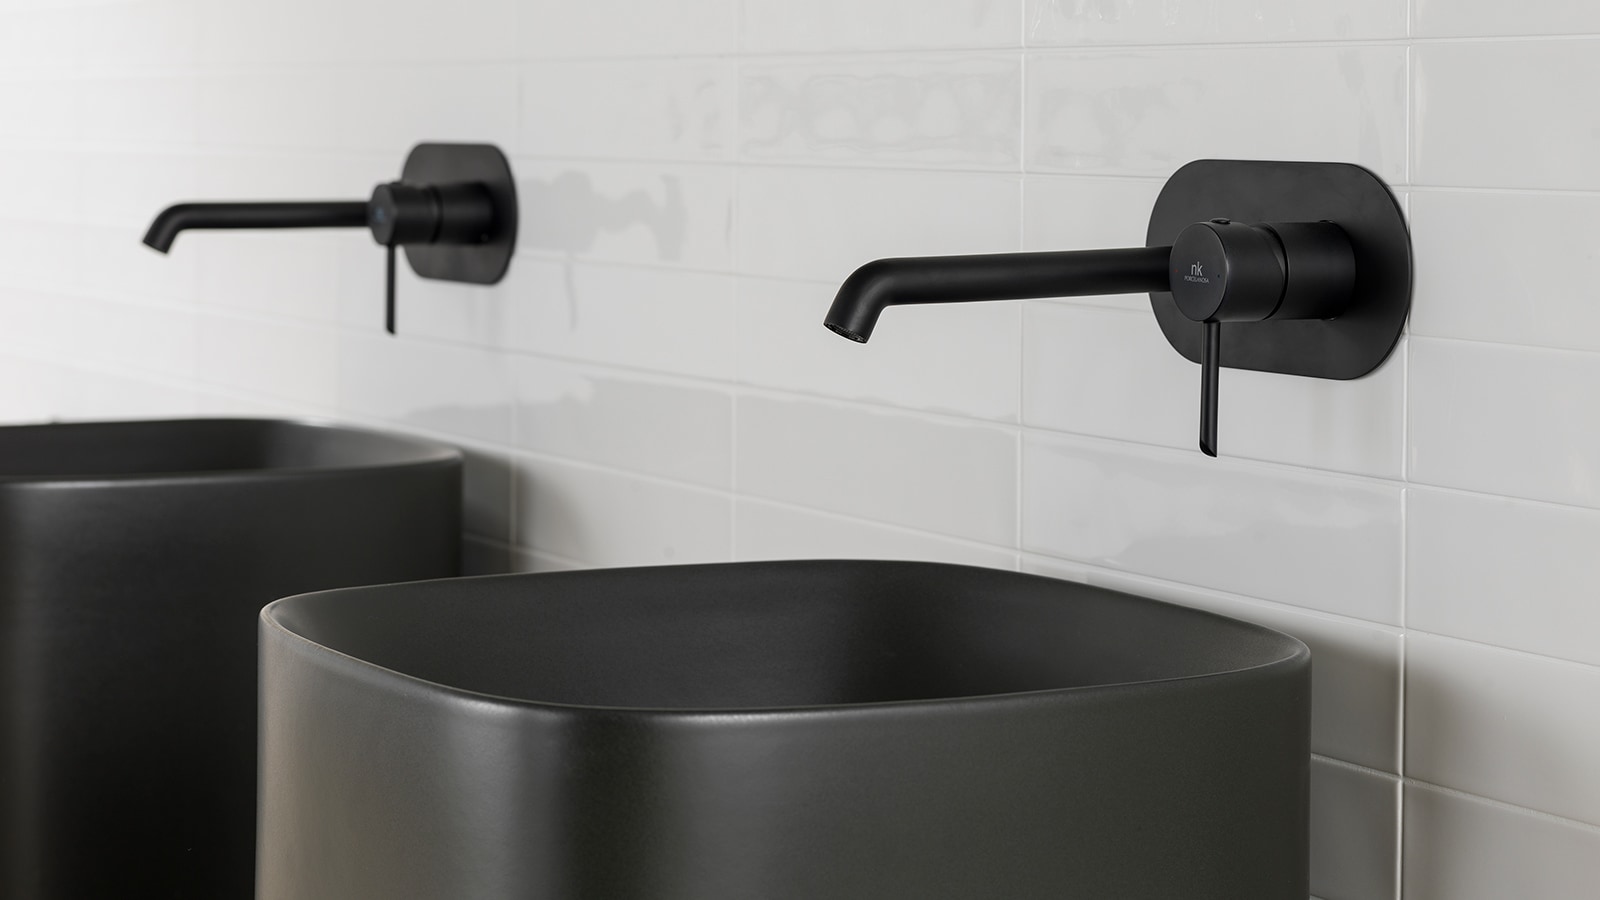 Idee per ridecorare il bagno: I rubinetti deluxe di Noken con finiture rame e oro